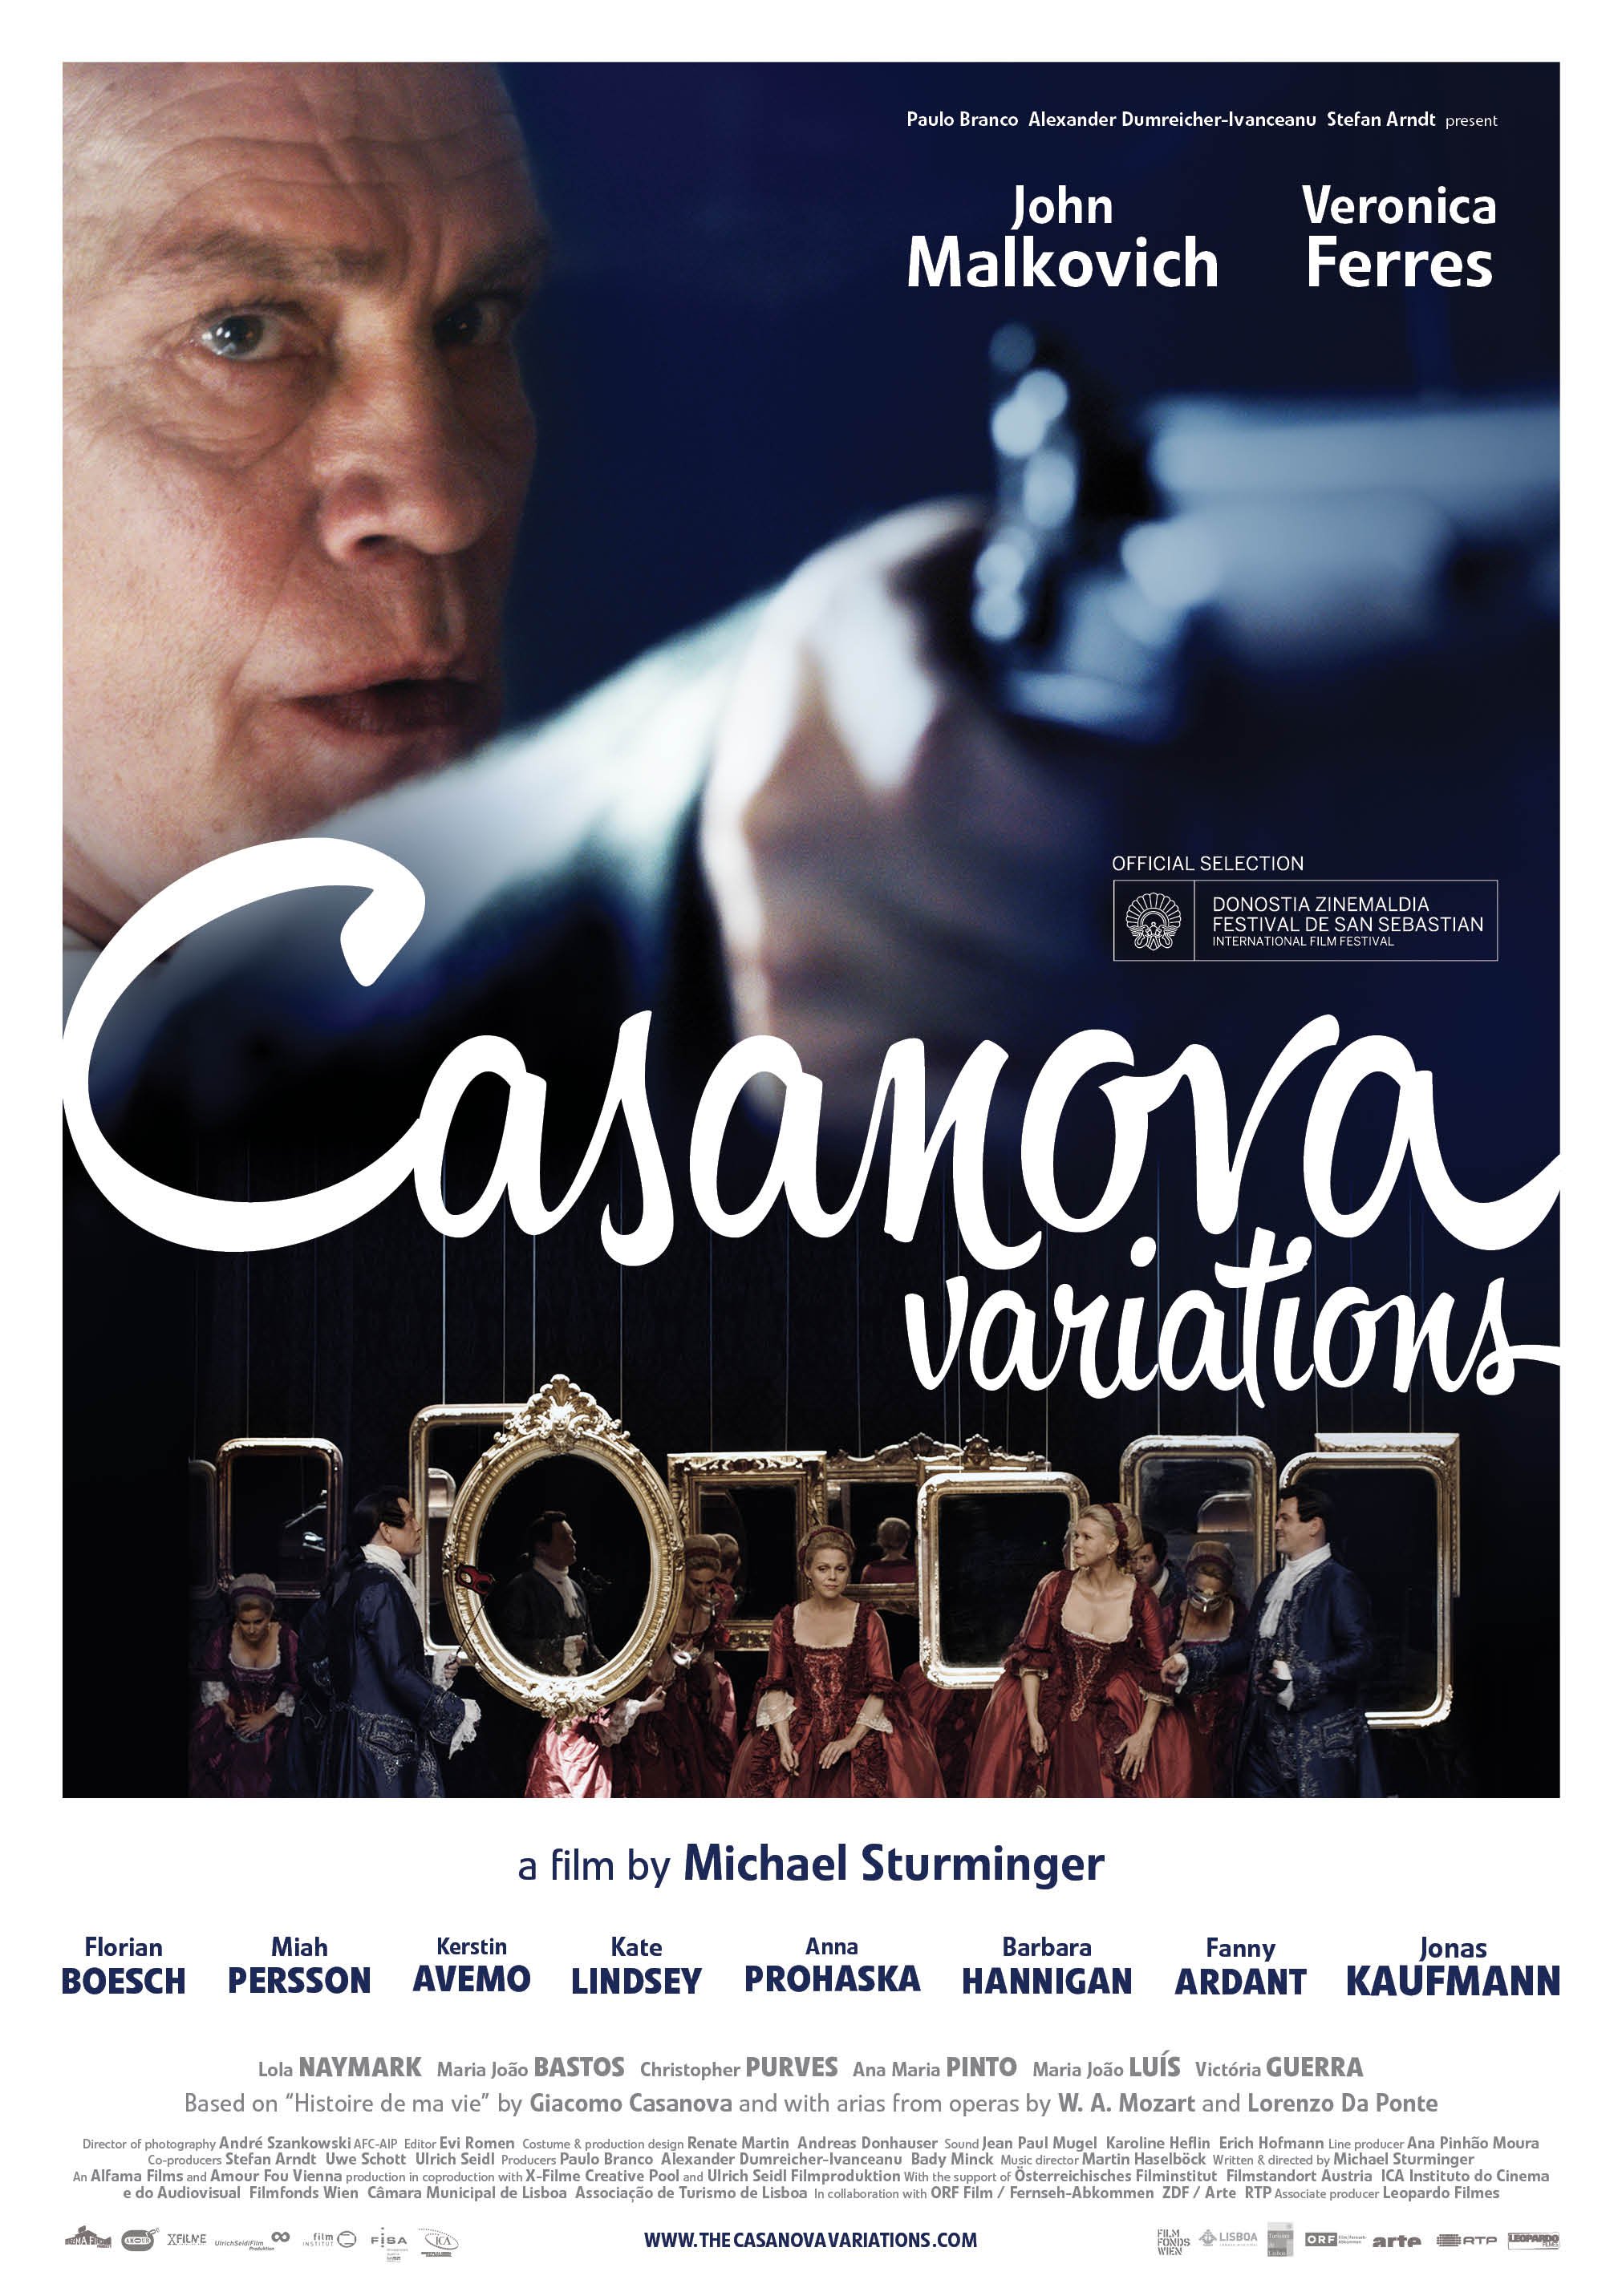 Casanova variations - Poster